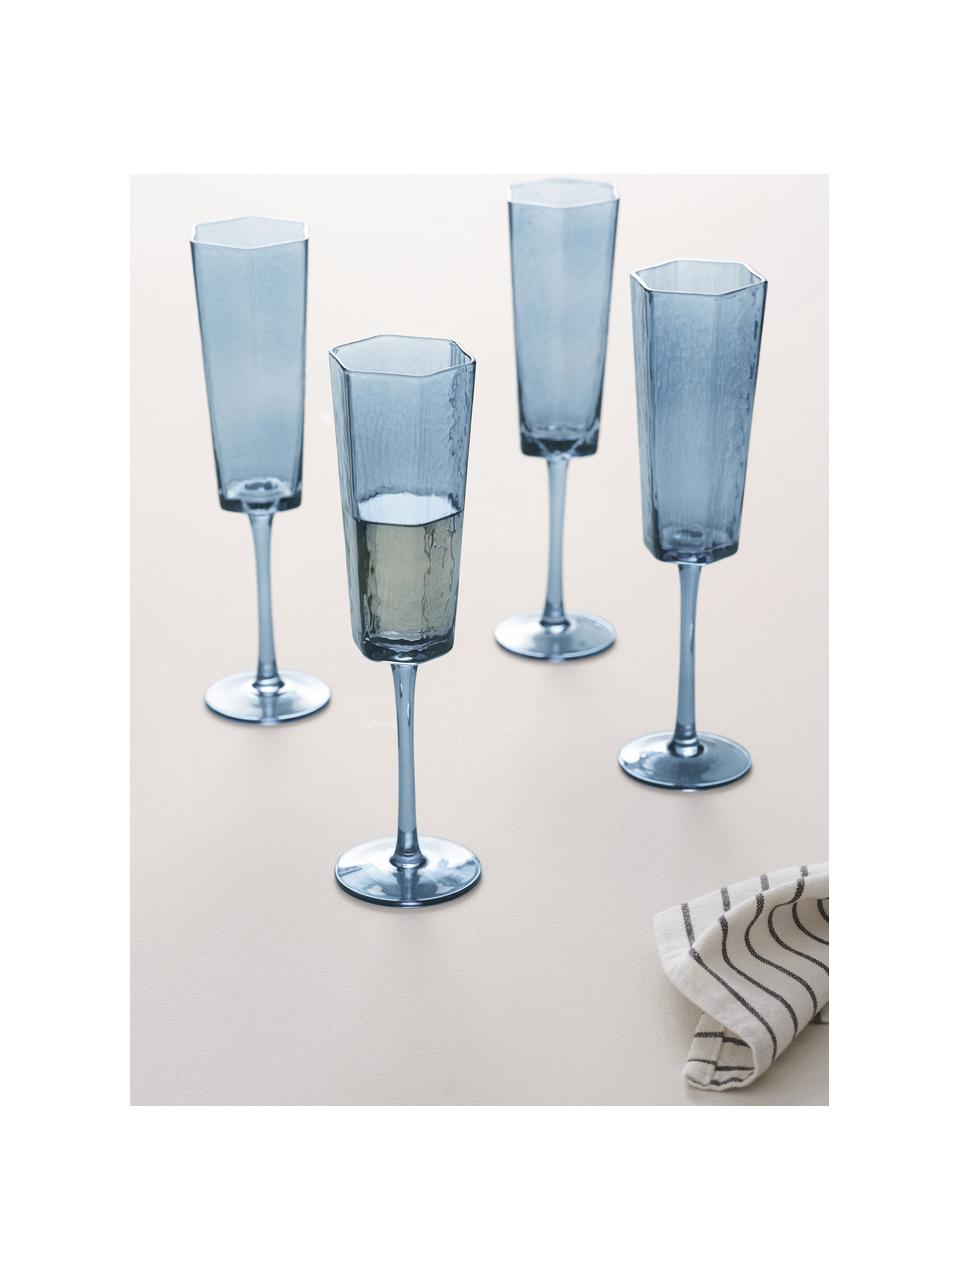 Champagnergläser Amory in Blau, 4 Stück, Glas, Blau, transparent, Ø 6 x H 26 cm, 230 ml